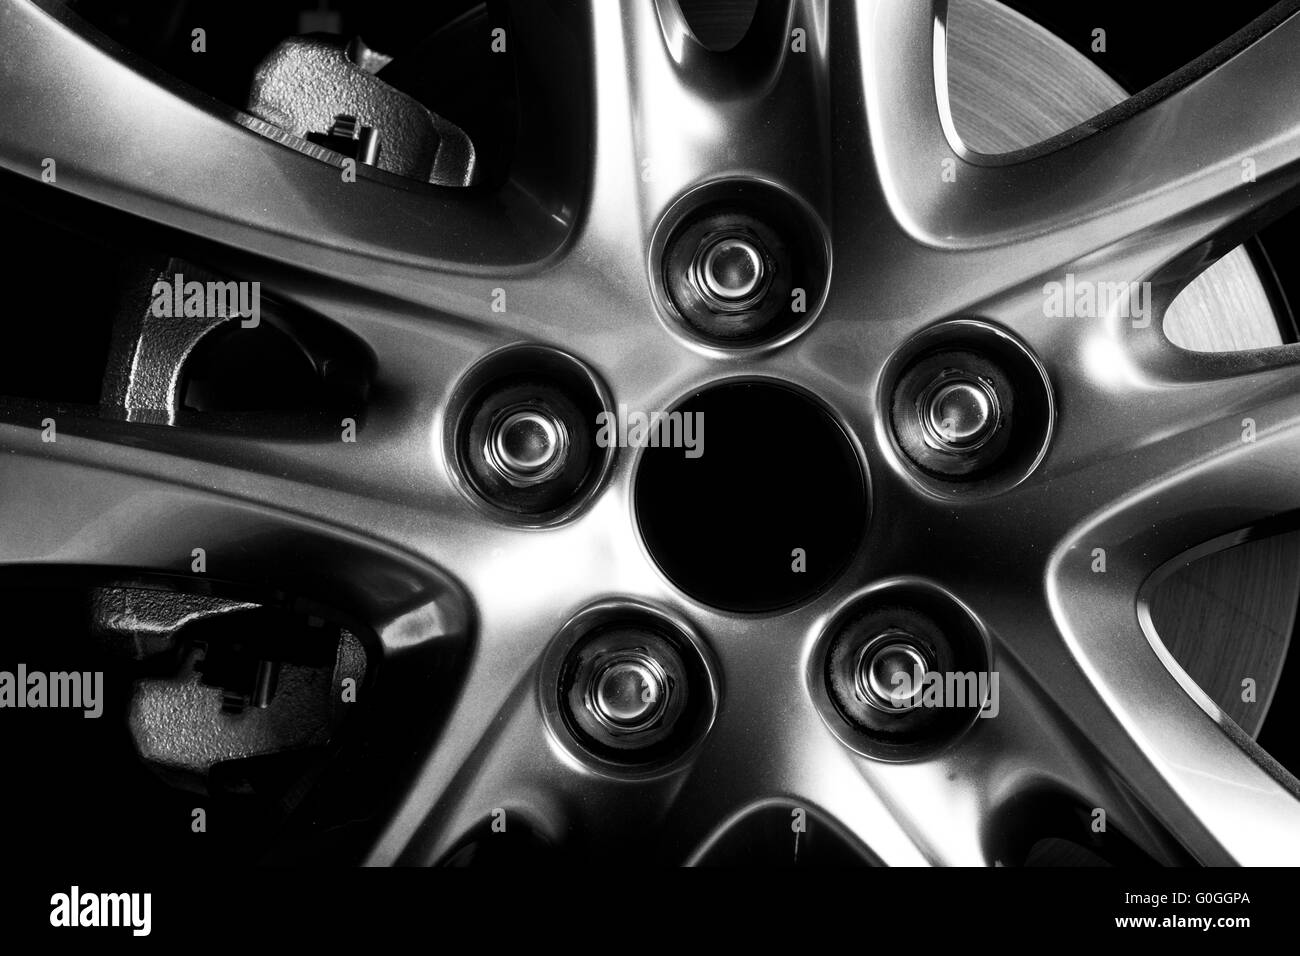 Close-up of aluminium rim of luxury car wheel Stock Photo